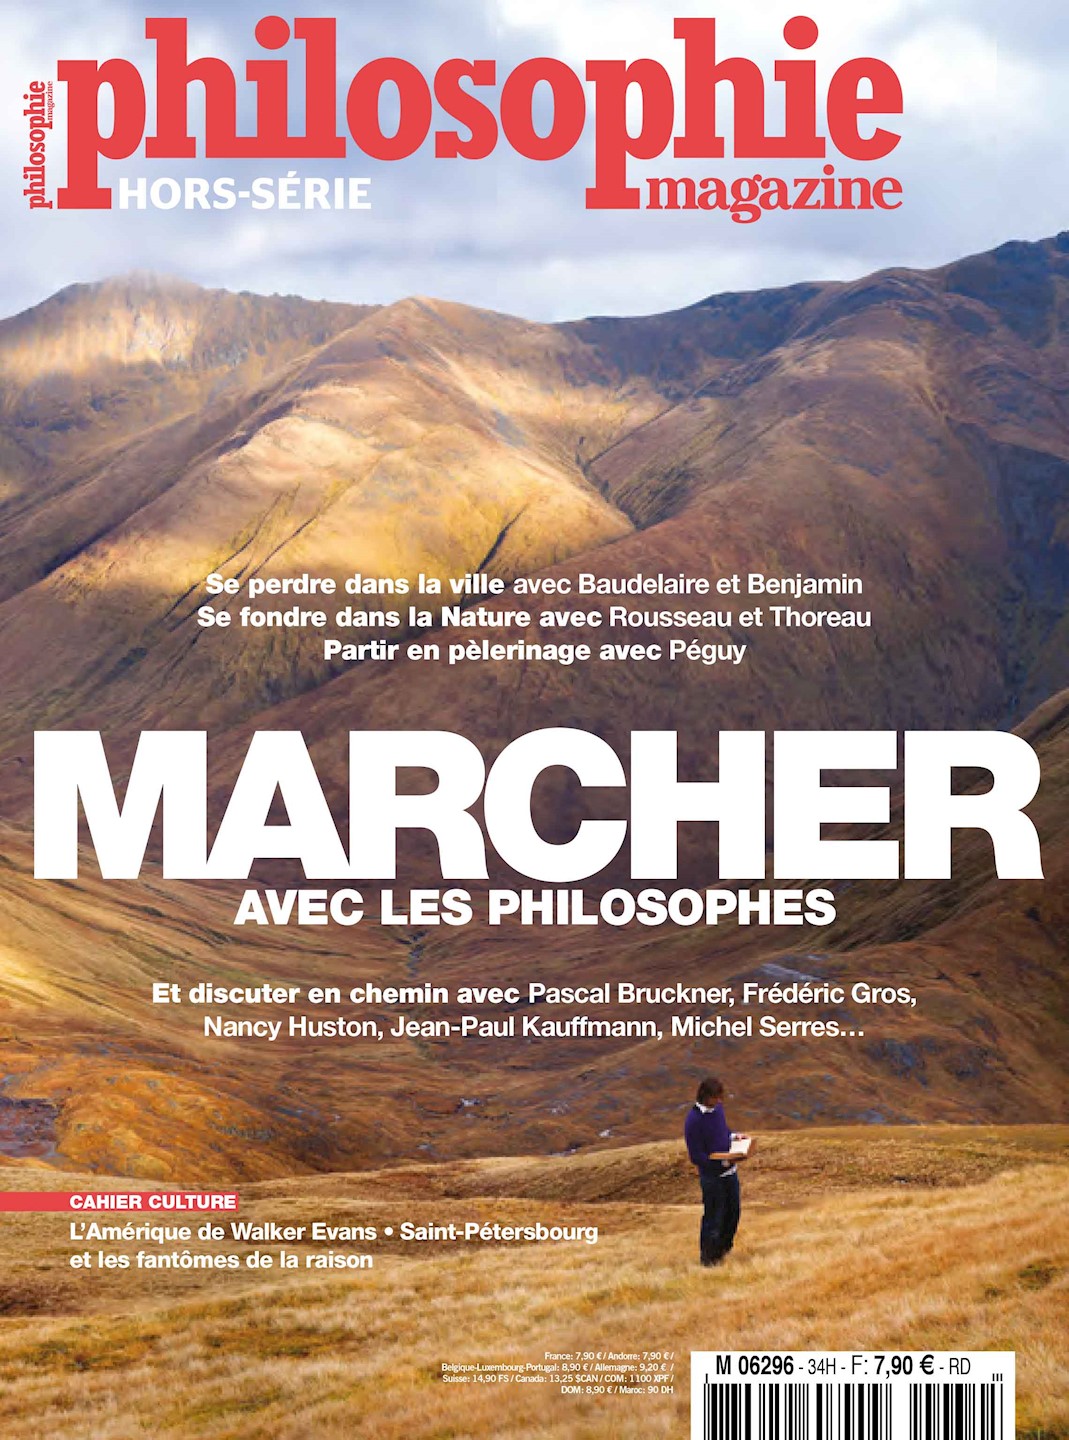 Marcher avec les philosophes - Philosophie Magazine parle de la randonnée - MonGR